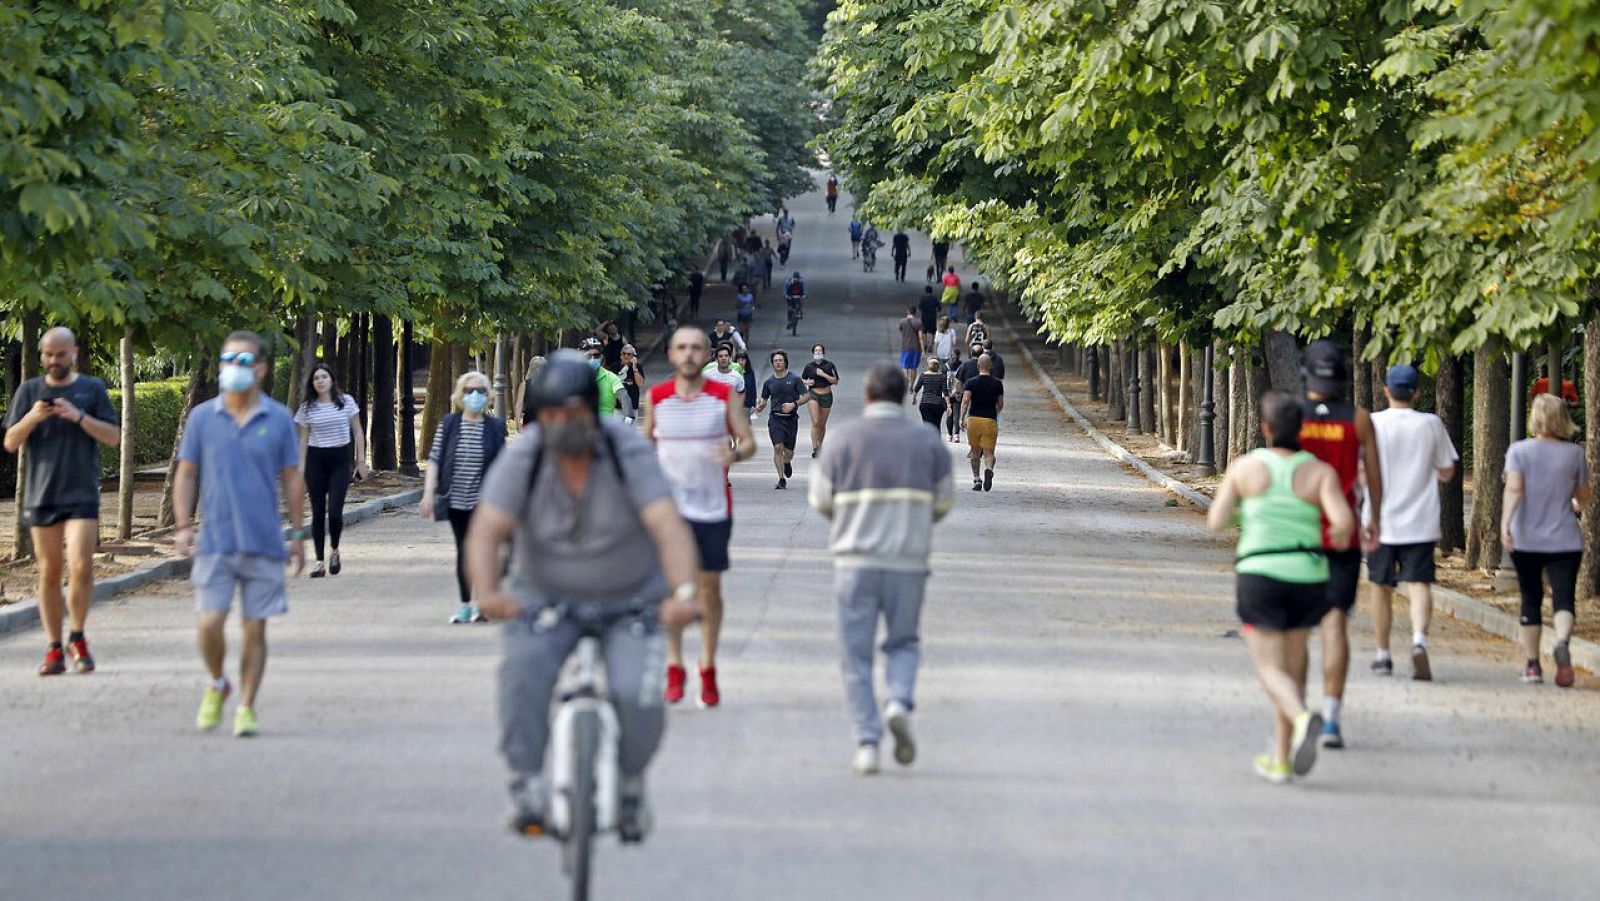 Madrileños disfrutan de un paseo y del deporte en madrileño parque de El Retiro.